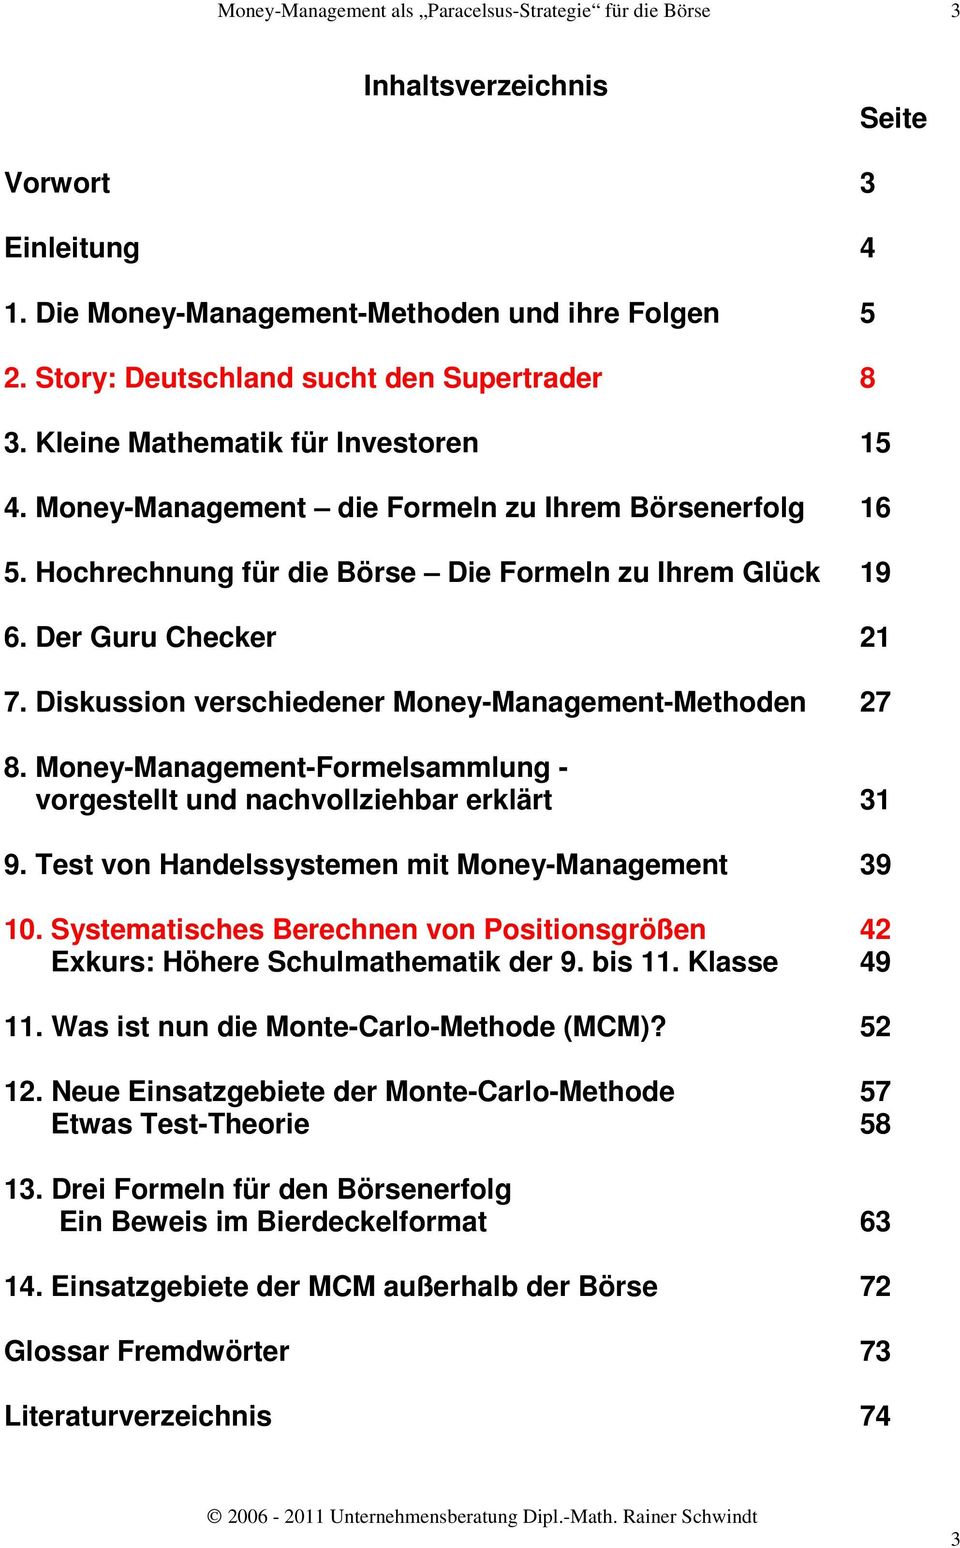 Money-Management-Formelsammlung - vorgestellt und nachvollziehbar erklärt 31 9. Test von Handelssystemen mit Money-Management 39 10.